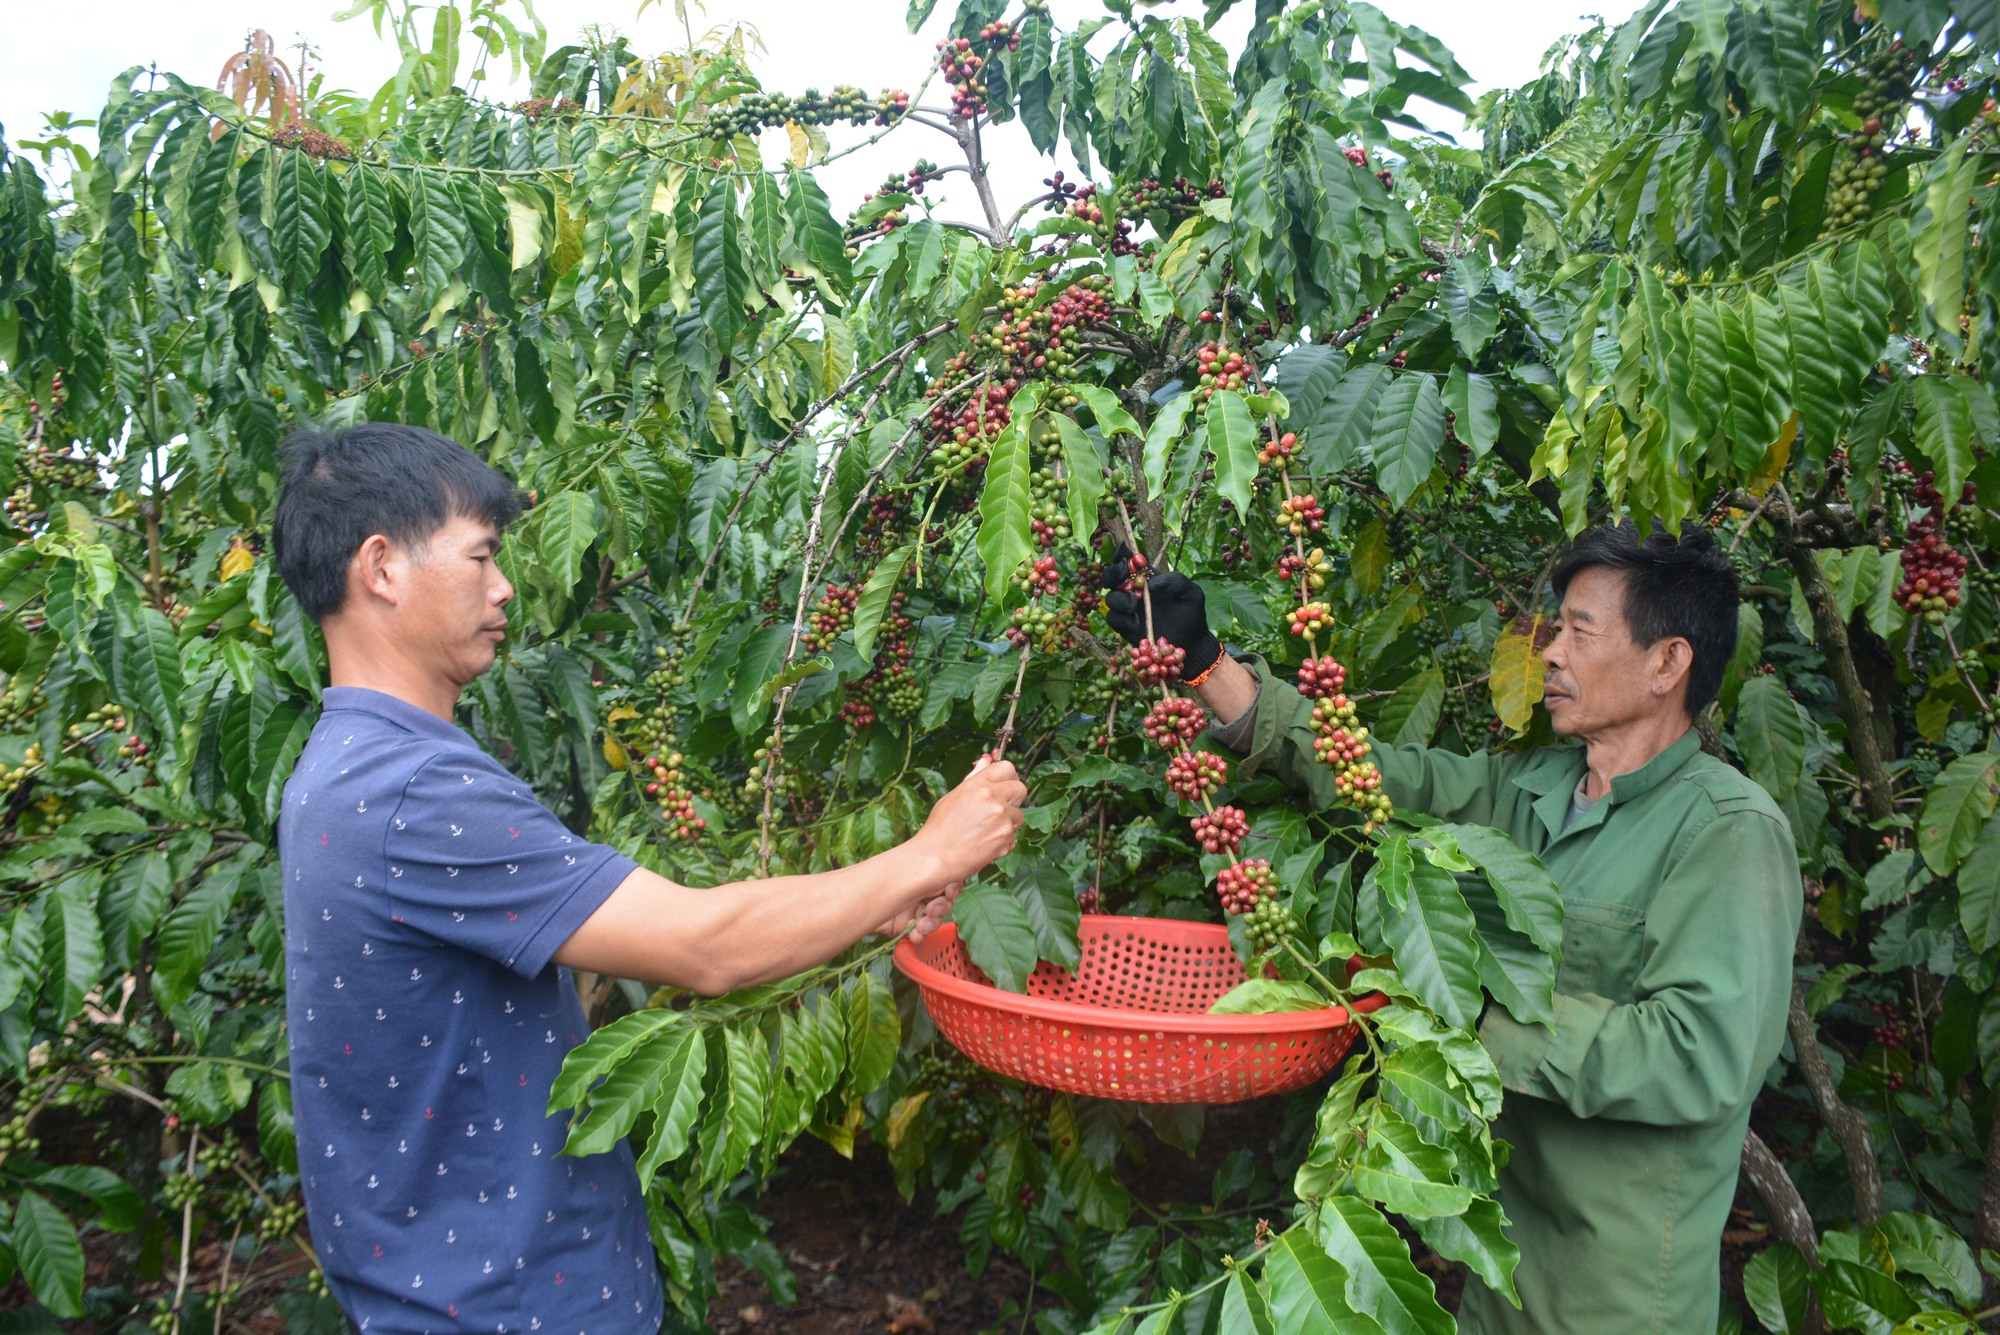 Giá cà phê đạt gần 70 ngàn đồng/kg nhân, người dân Lâm Đồng “mất ăn, mất ngủ” vì “cà tặc” - Ảnh 5.